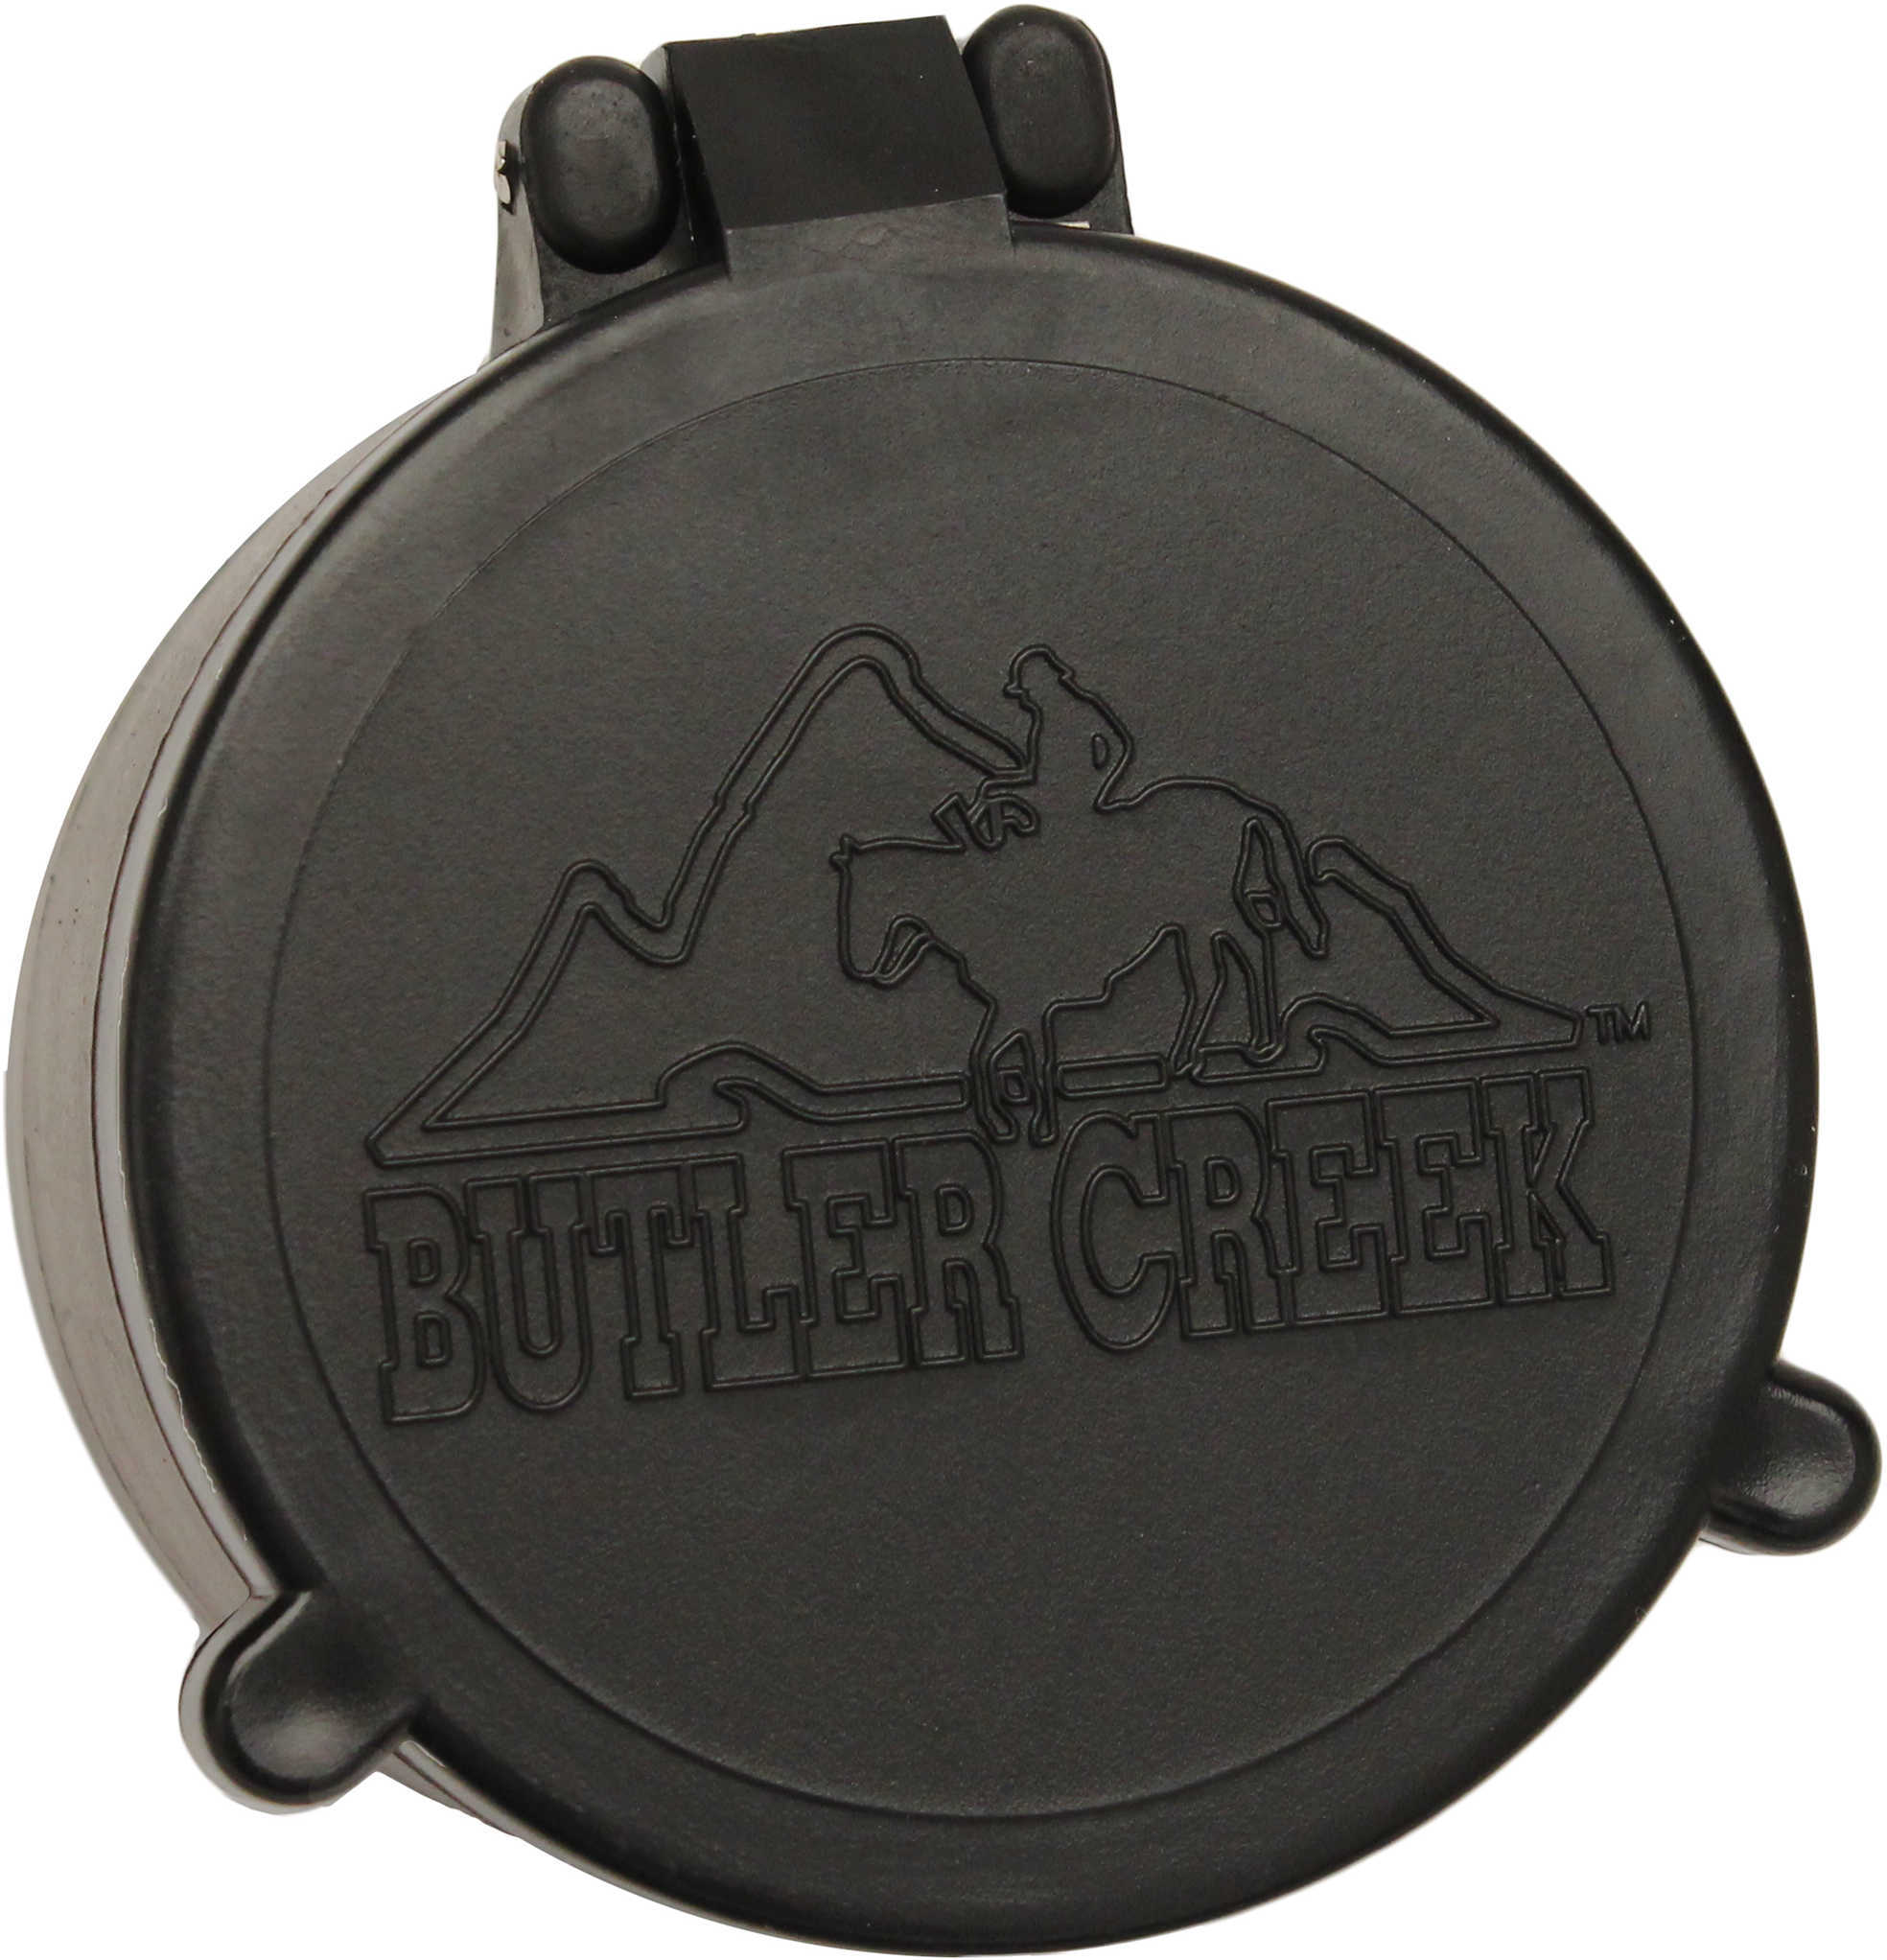 Butler Creek 30300 Flip-Open Scope Cover Objective Lens 49.80mm Slip On Polymer Black